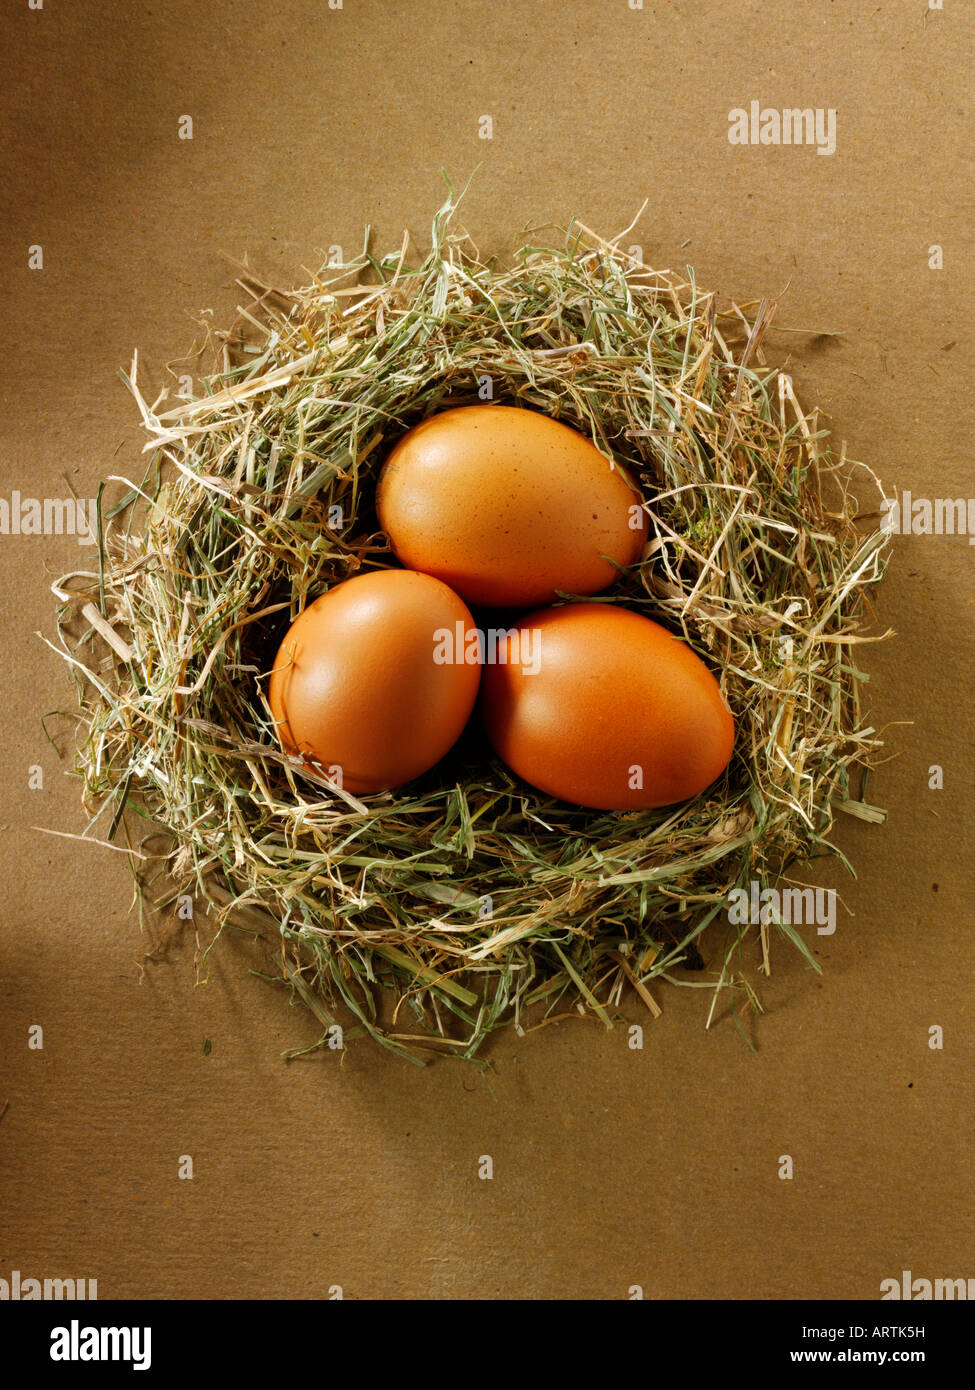 Burford poulet biologique brun oeufs dans un nid Banque D'Images